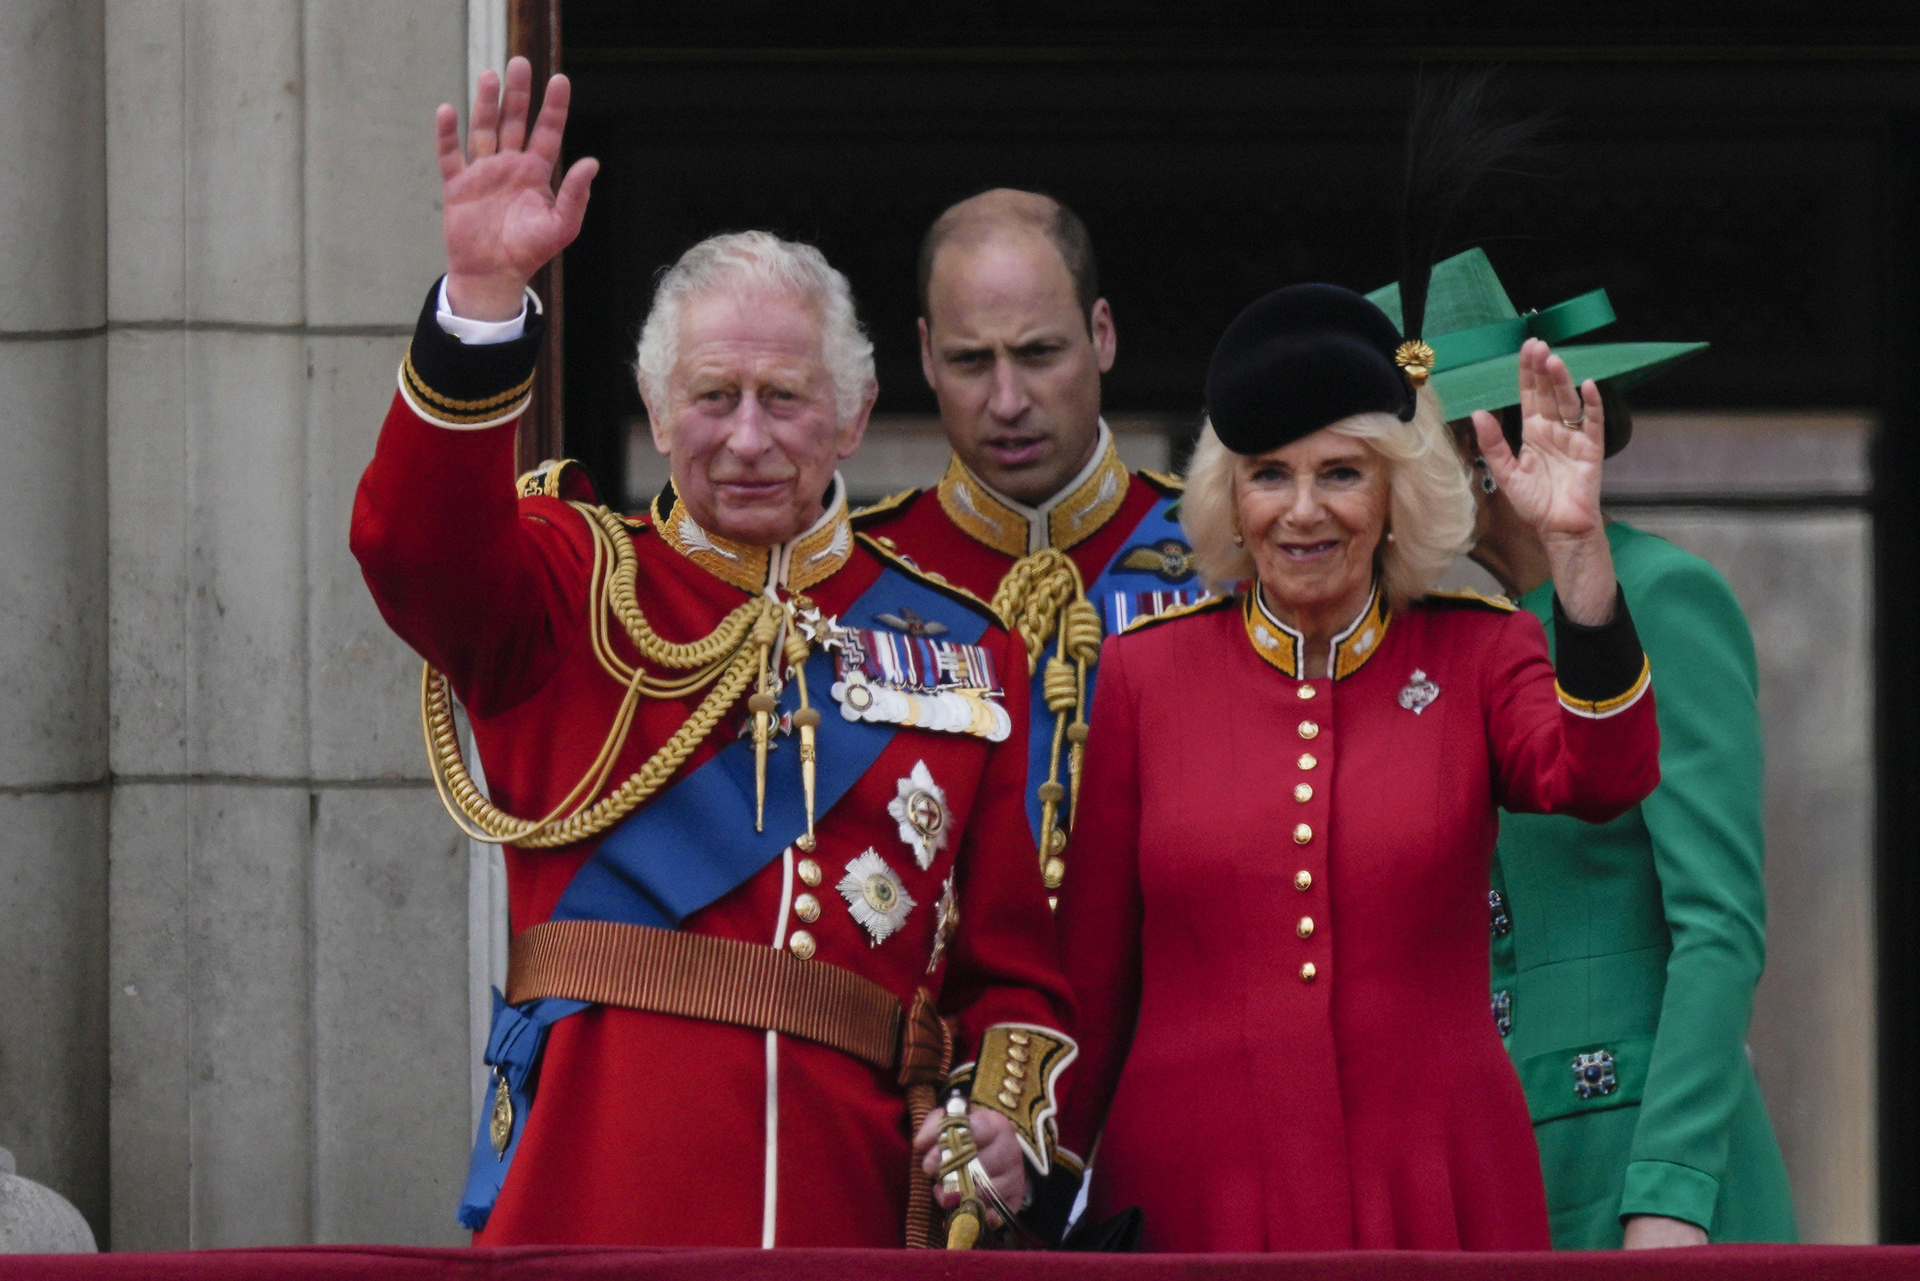 Vestido con el uniforme rojo de ceremonia, Carlos III, de 74 años, salió del palacio de Buckingham, residencia de la familia real, montando a caballo. (AP)